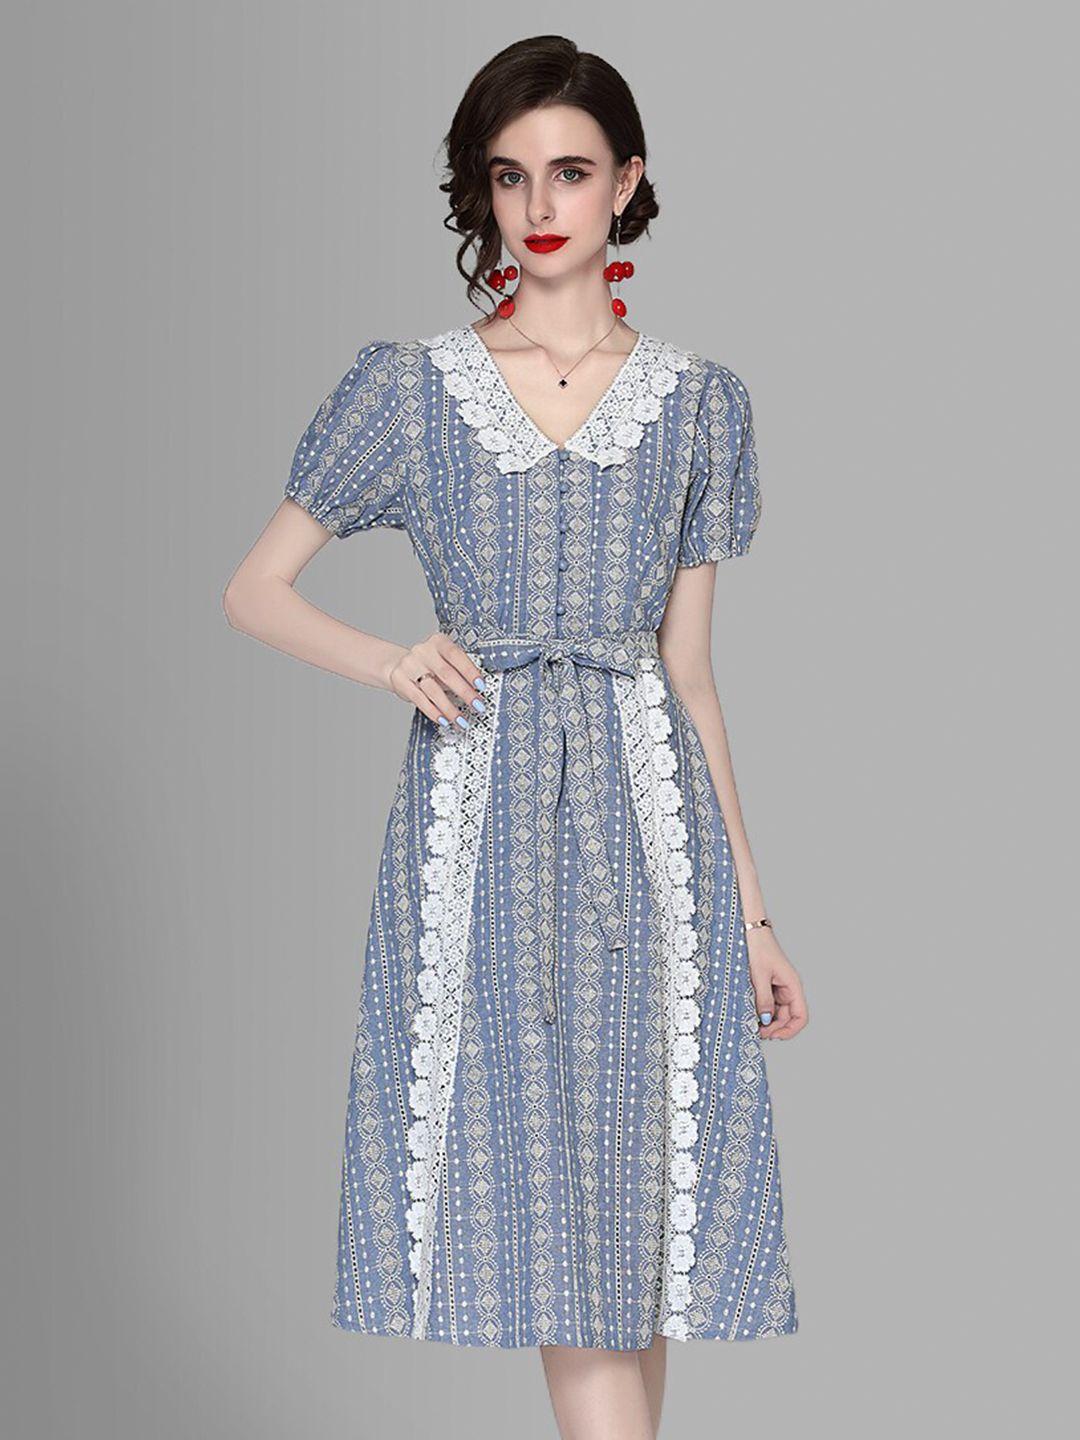 jc collection women blue & white a-line midi dress